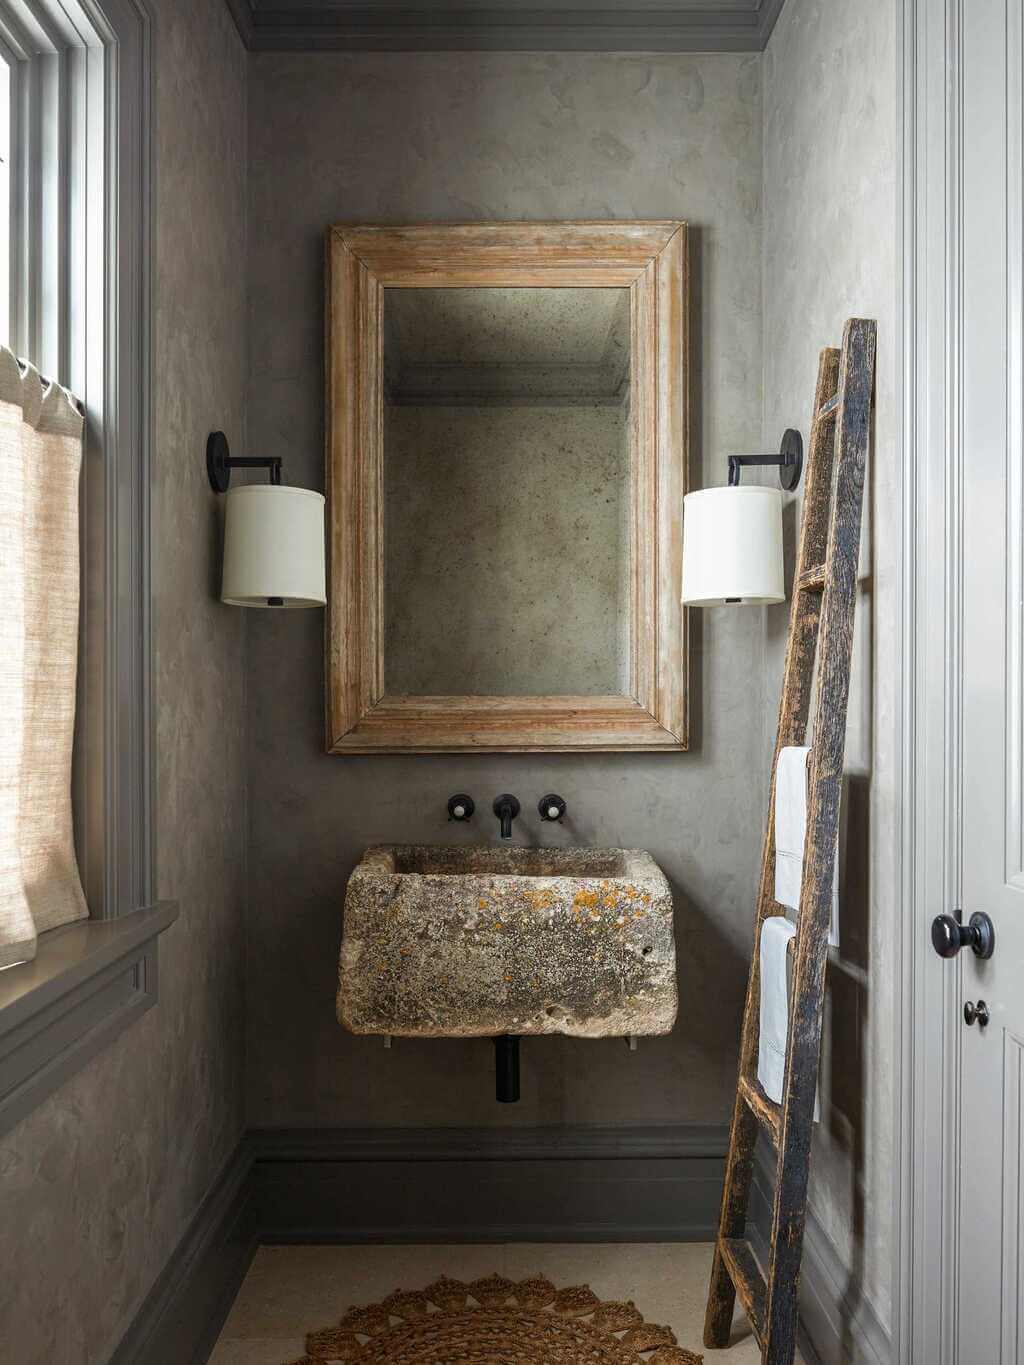  Rustic Bathroom Mirror Ideas